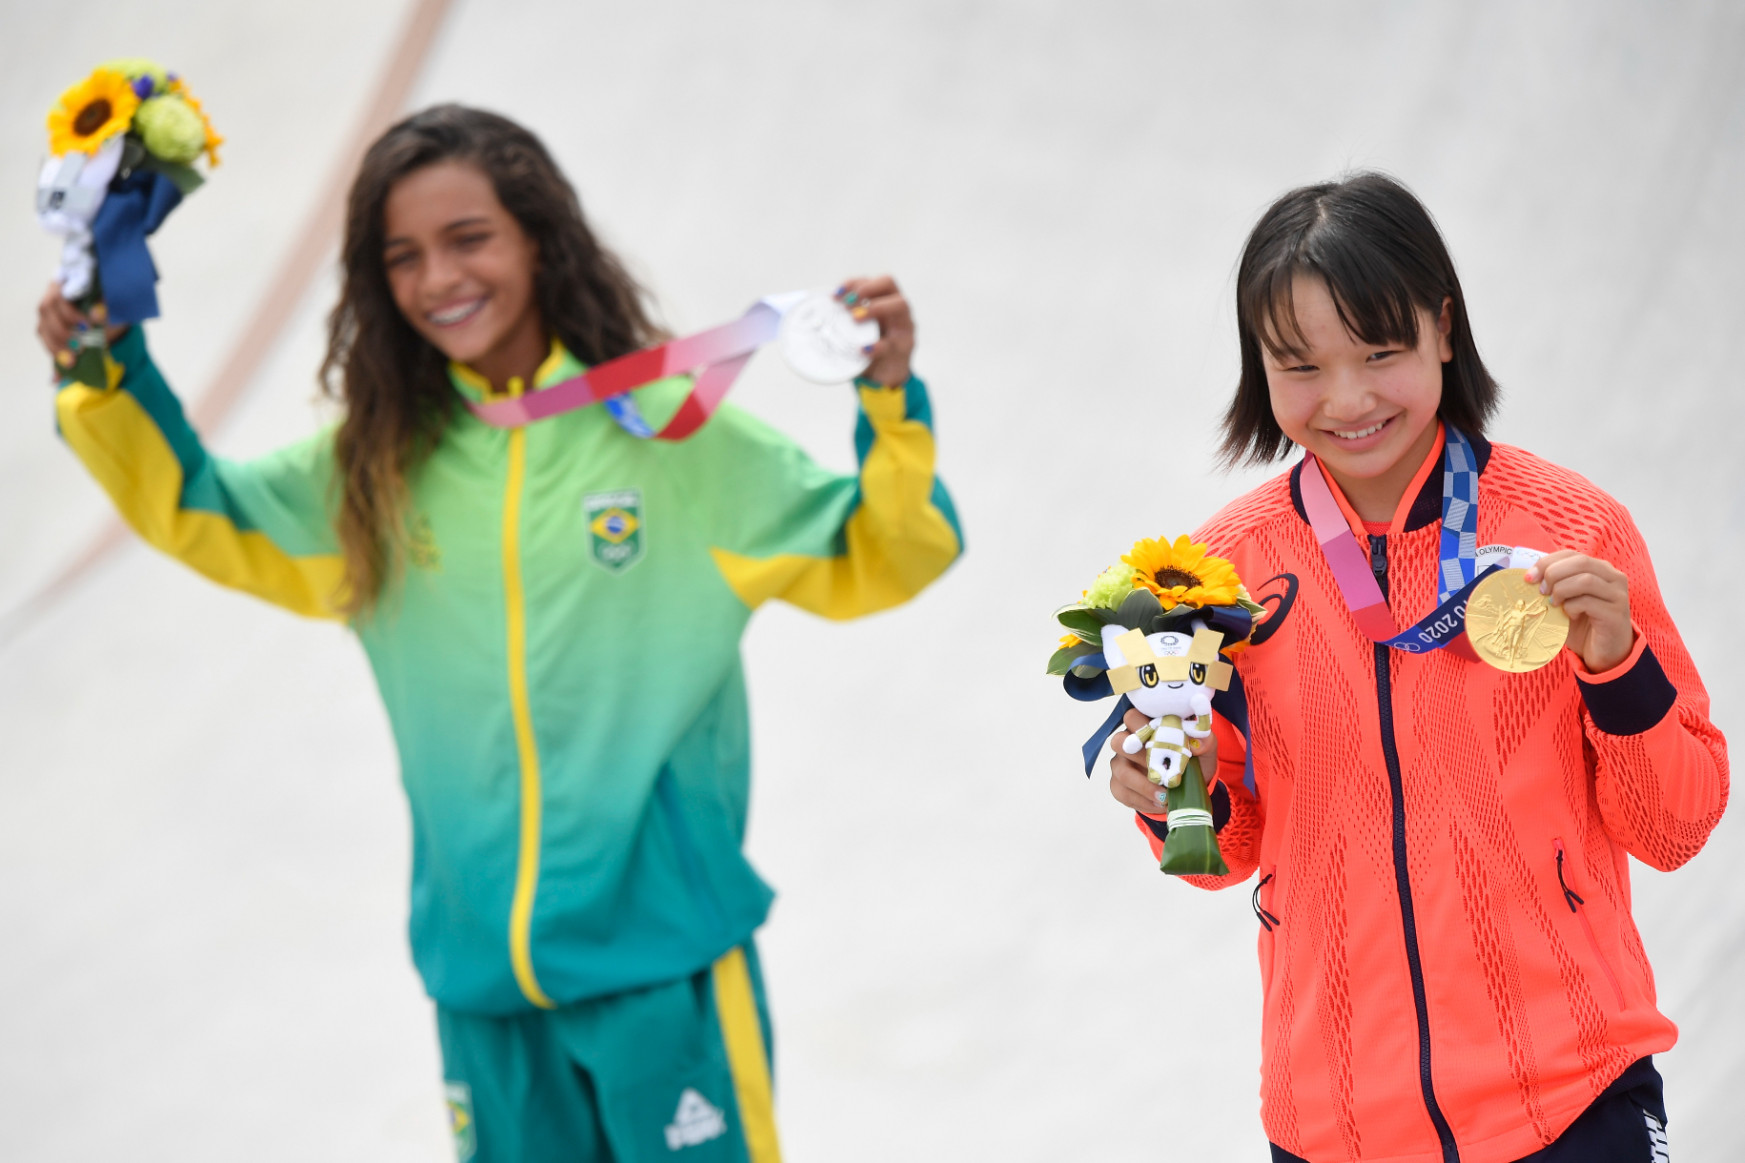 13 éves japán lány lett a gördeszka olimpiai bajnoka, de a dobogósok átlagéletkora is csak 14 év